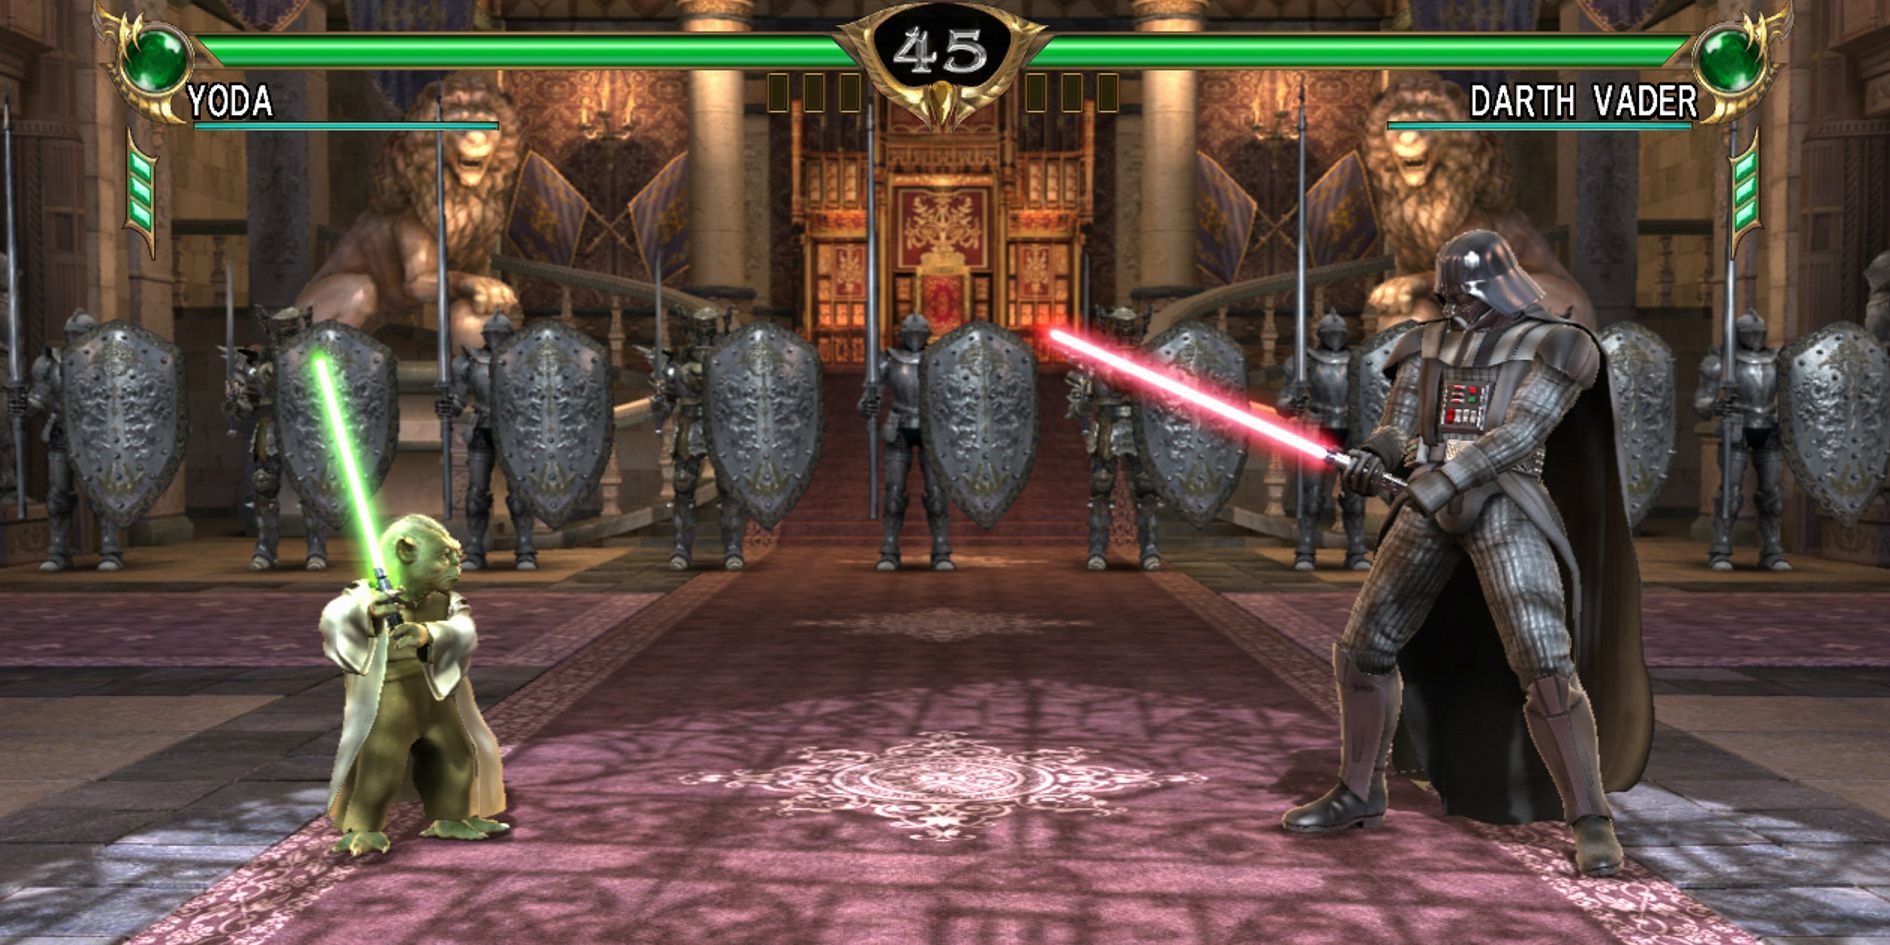 Yoda vs Darth Vader in Soul Calibur 4